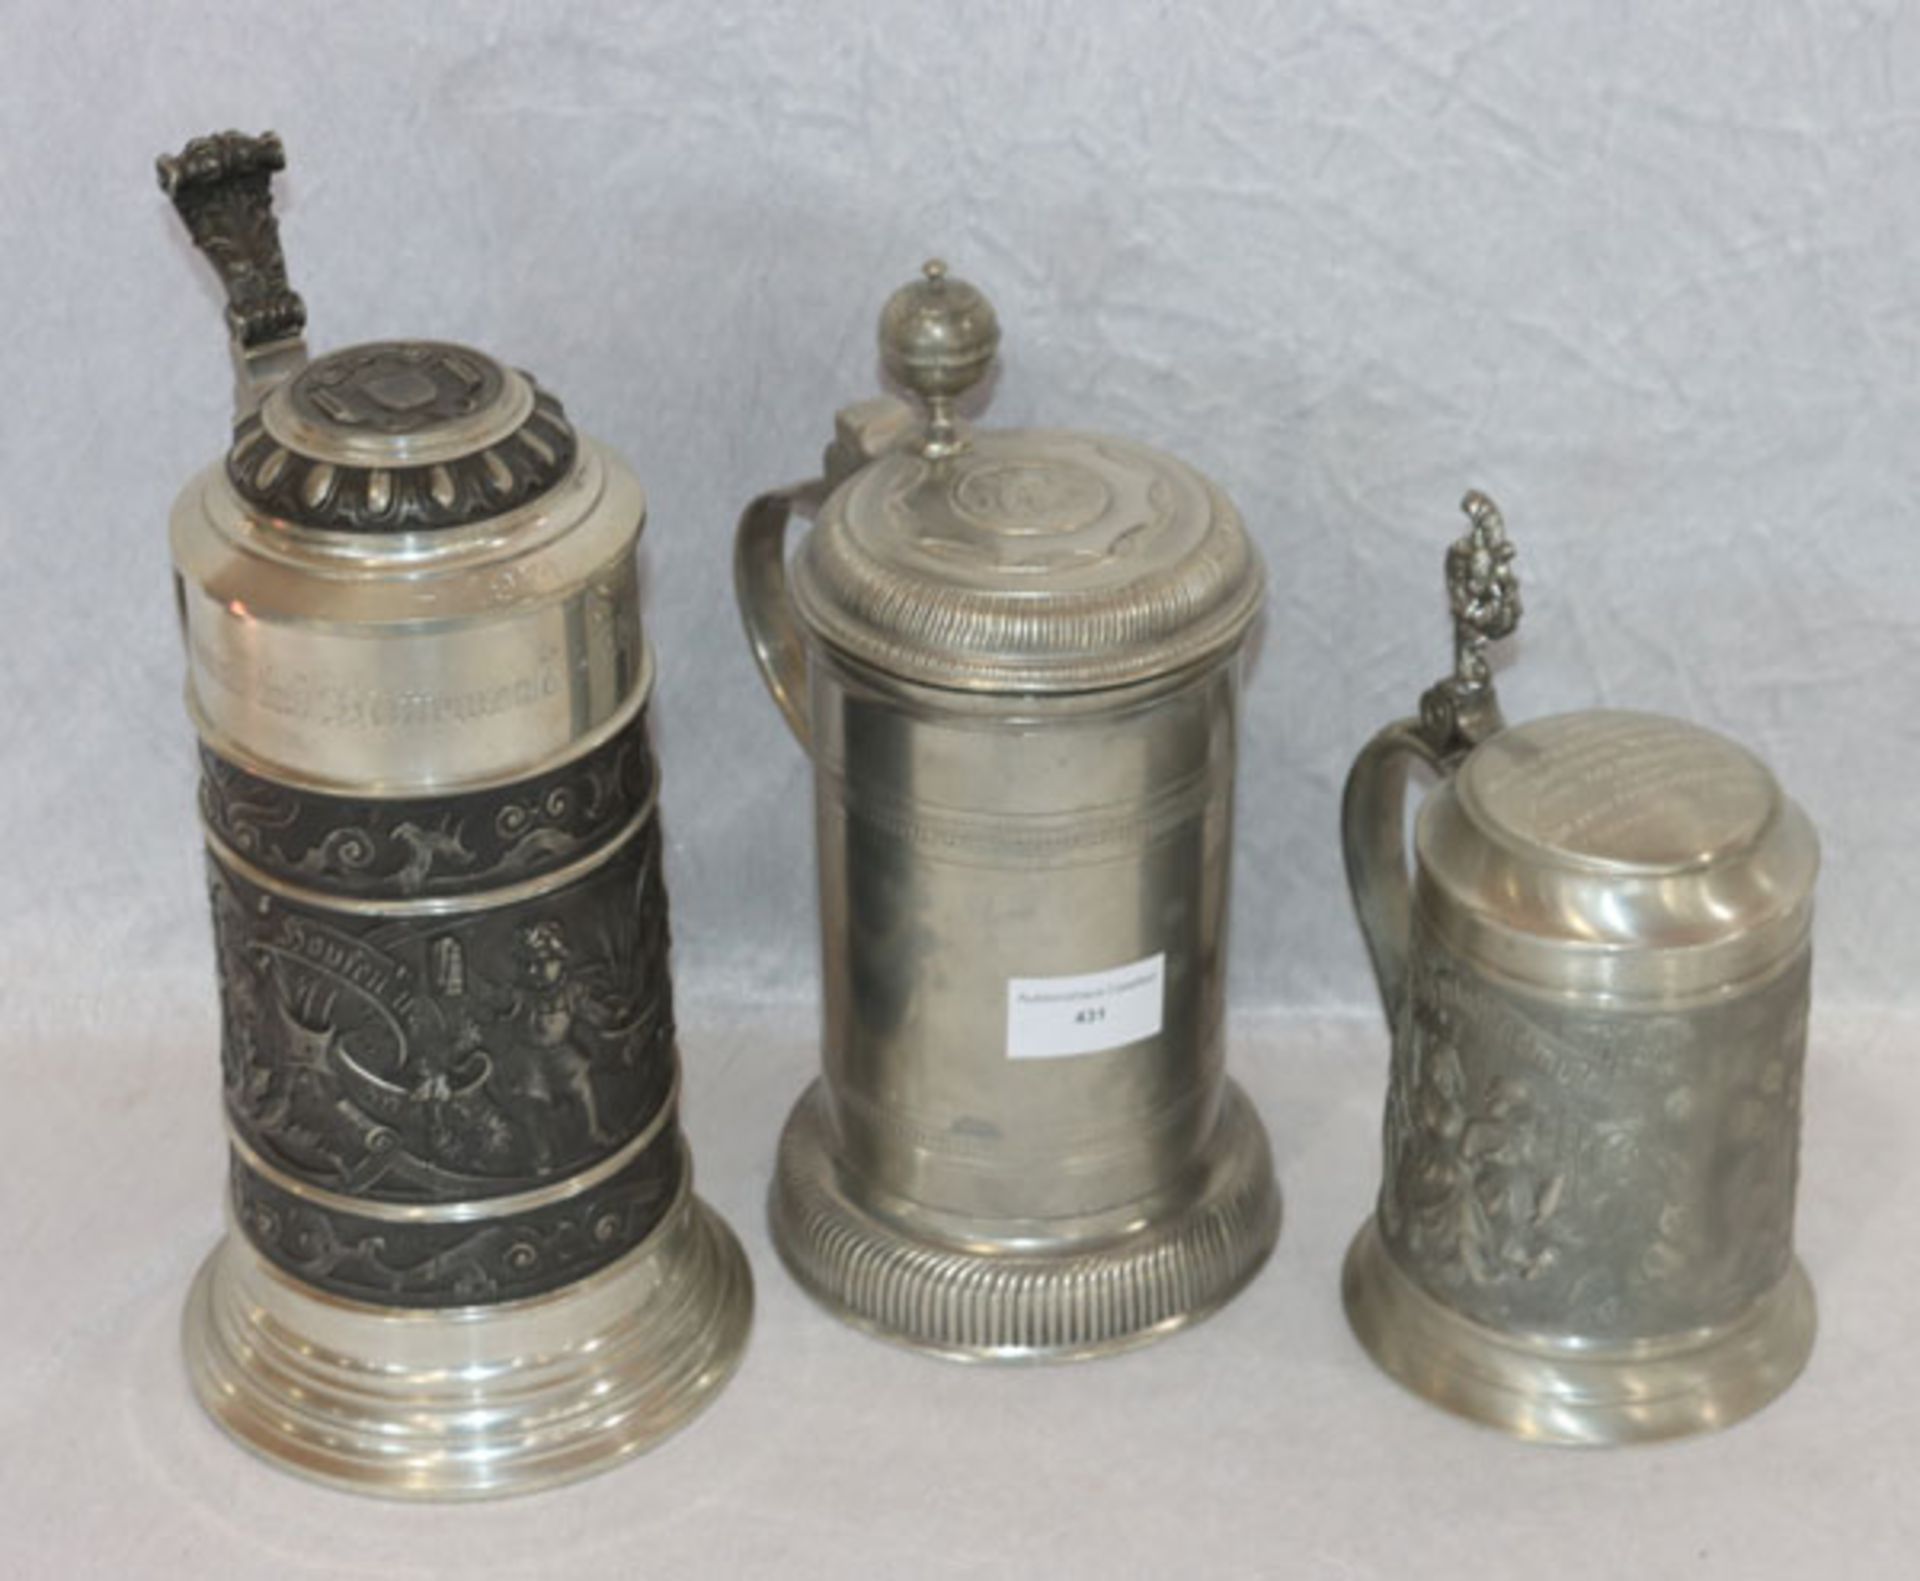 3 Zinn Bierkrüge, teils mit Reliefdekor und Zinndeckel, teils graviert, H 20/27 cm, Gebrauchsspuren